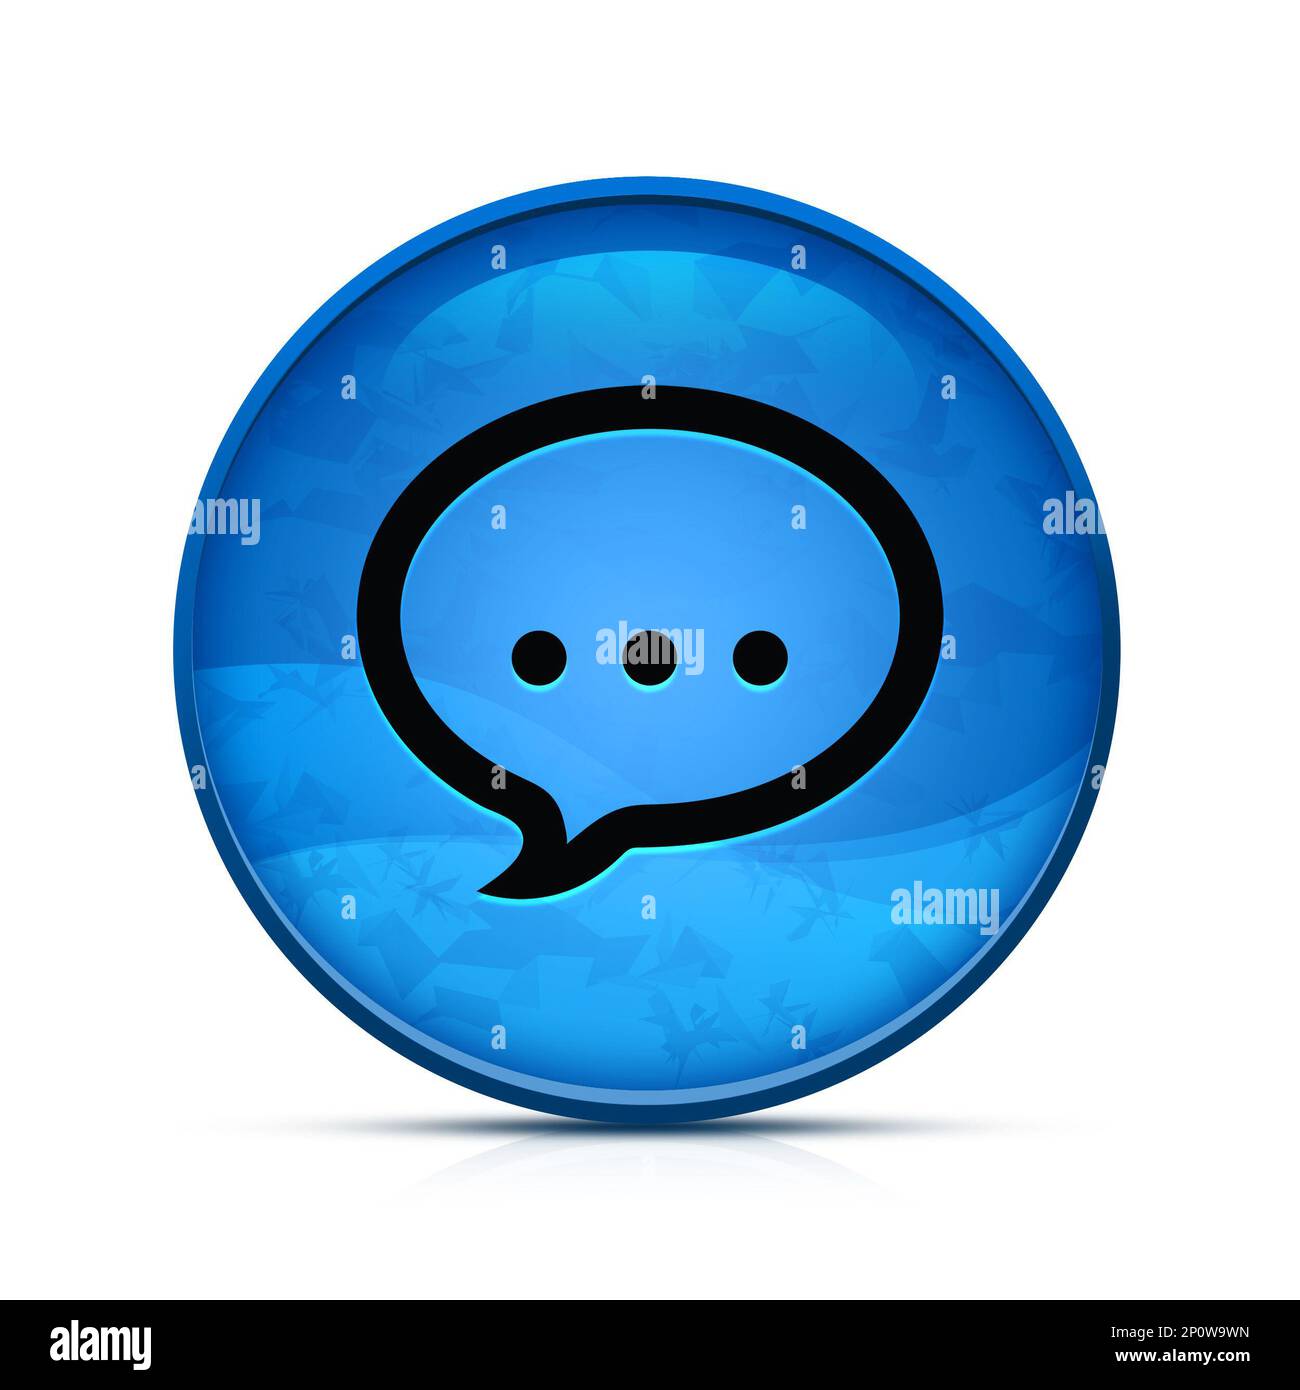 Sprechsymbol auf dem stilvollen, spritzwasserblauen runden Knopf Stockfoto